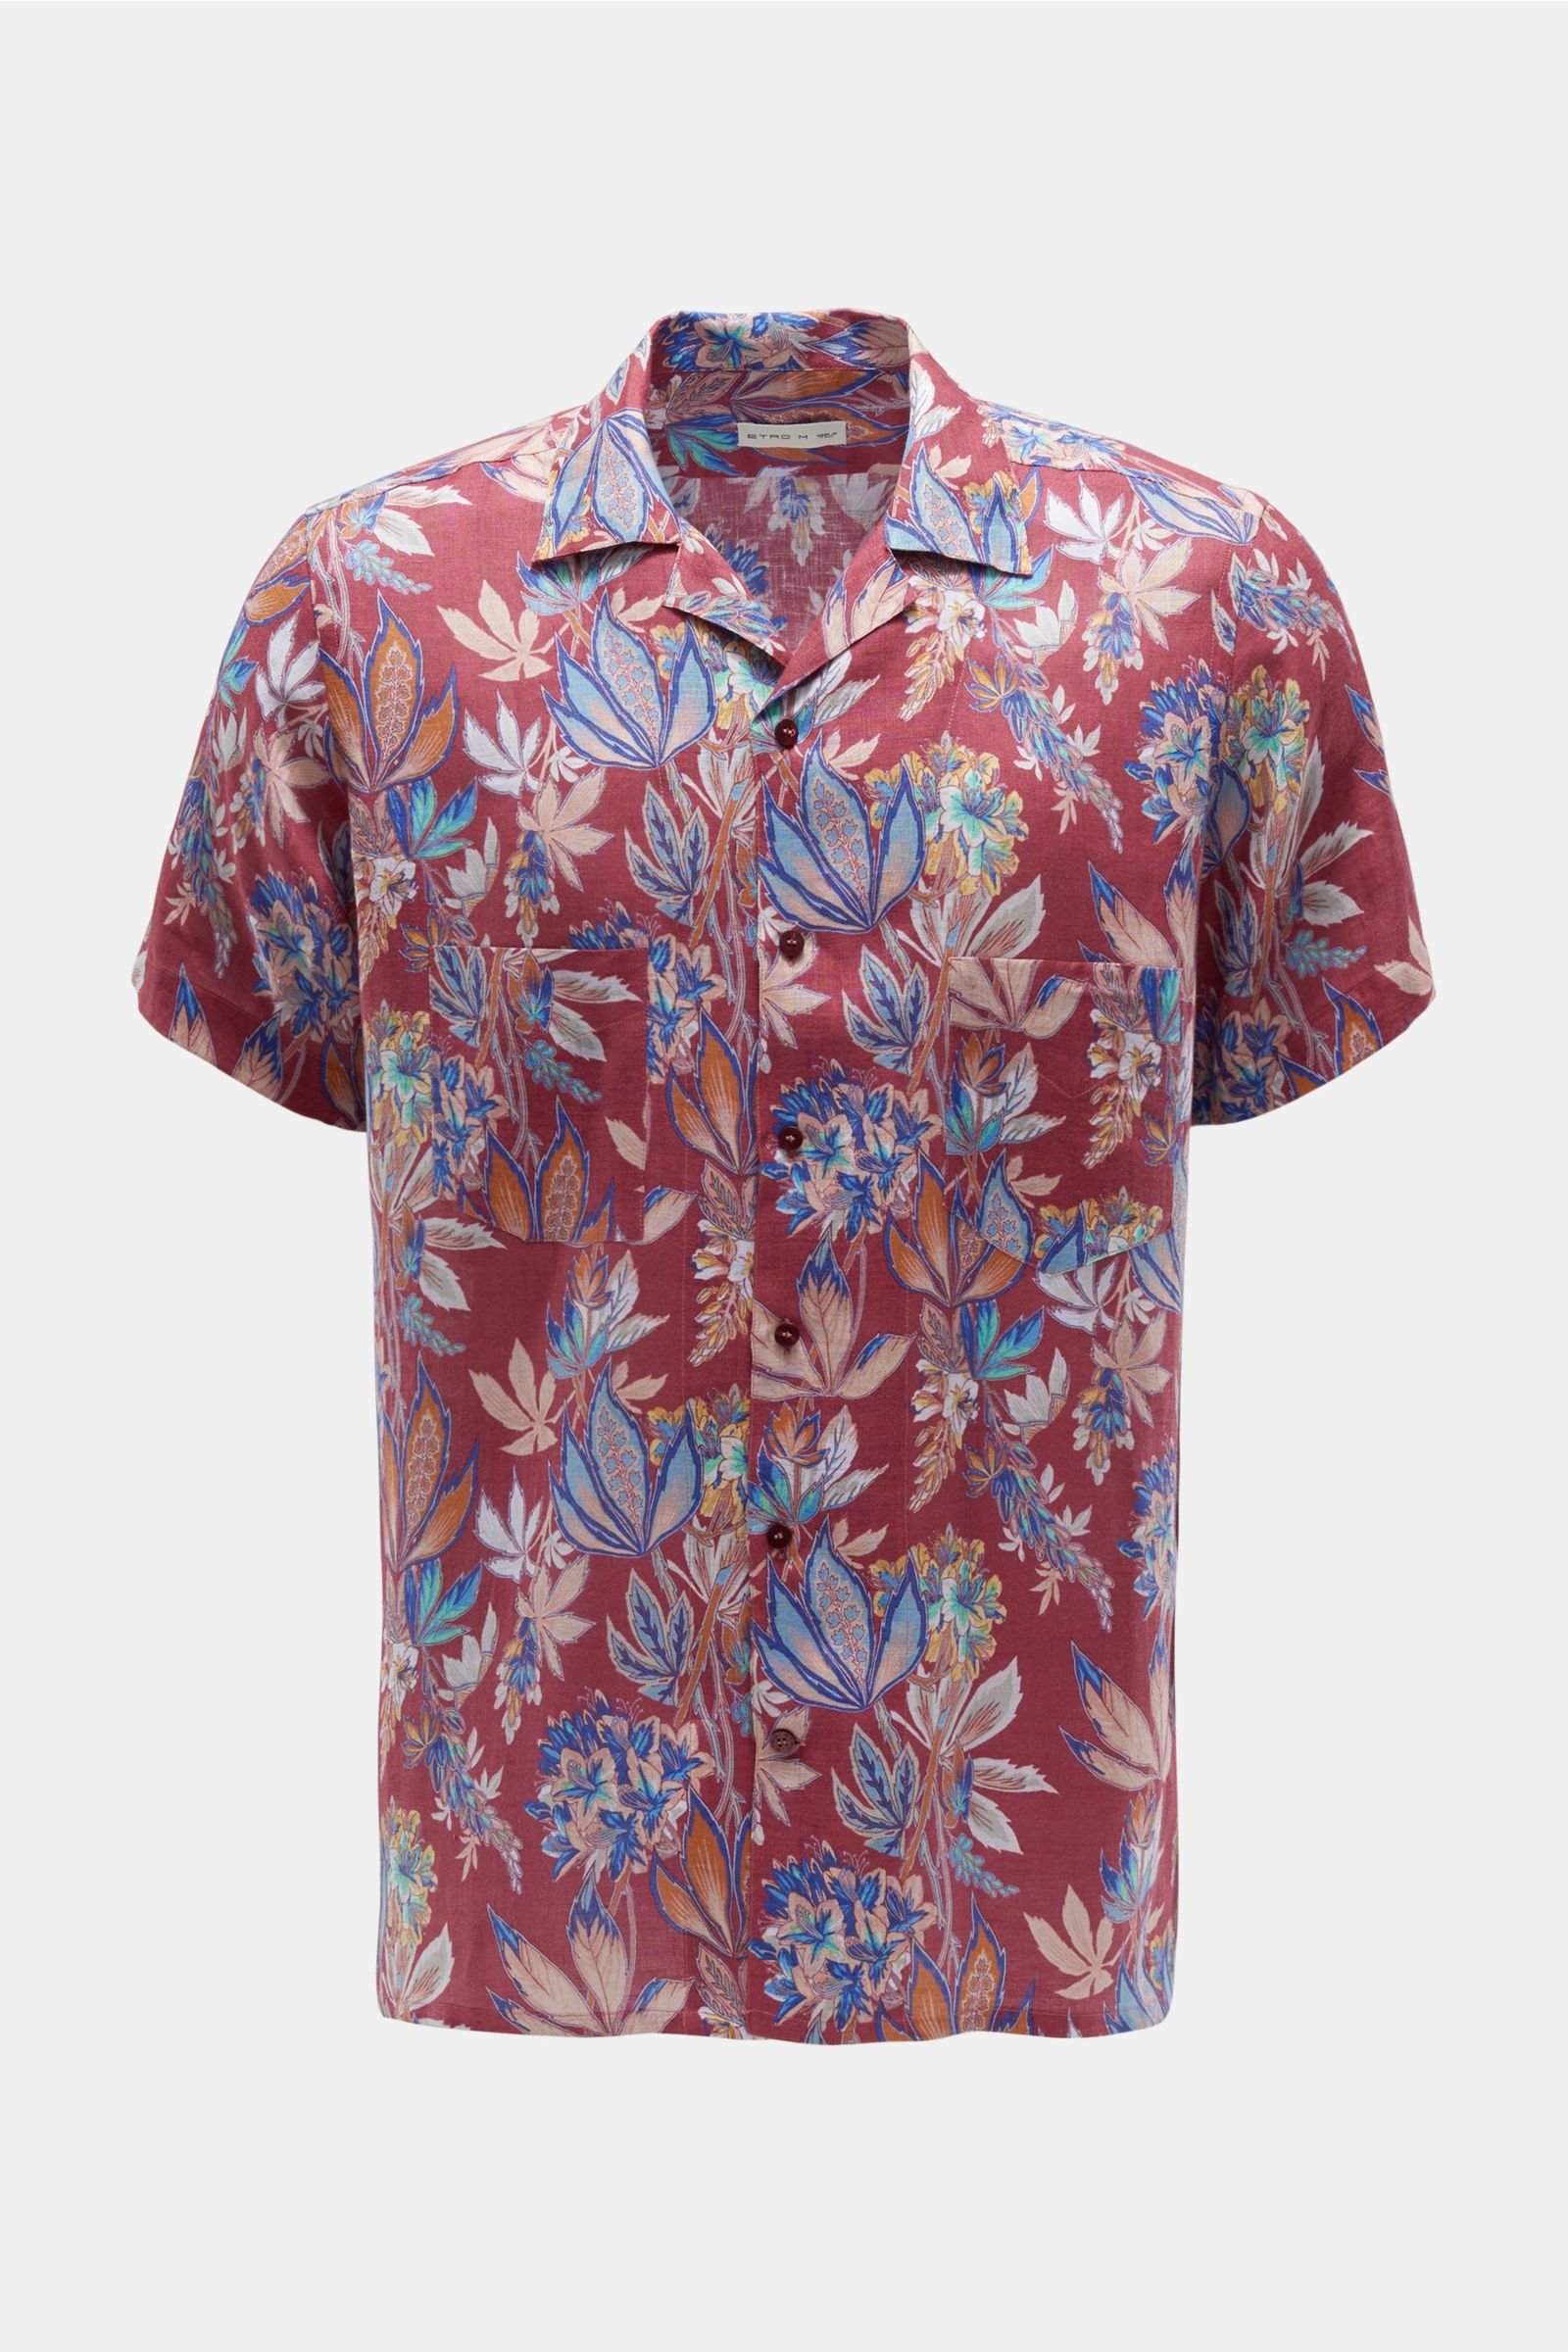 Linen short sleeve shirt Cuban collar red patterned